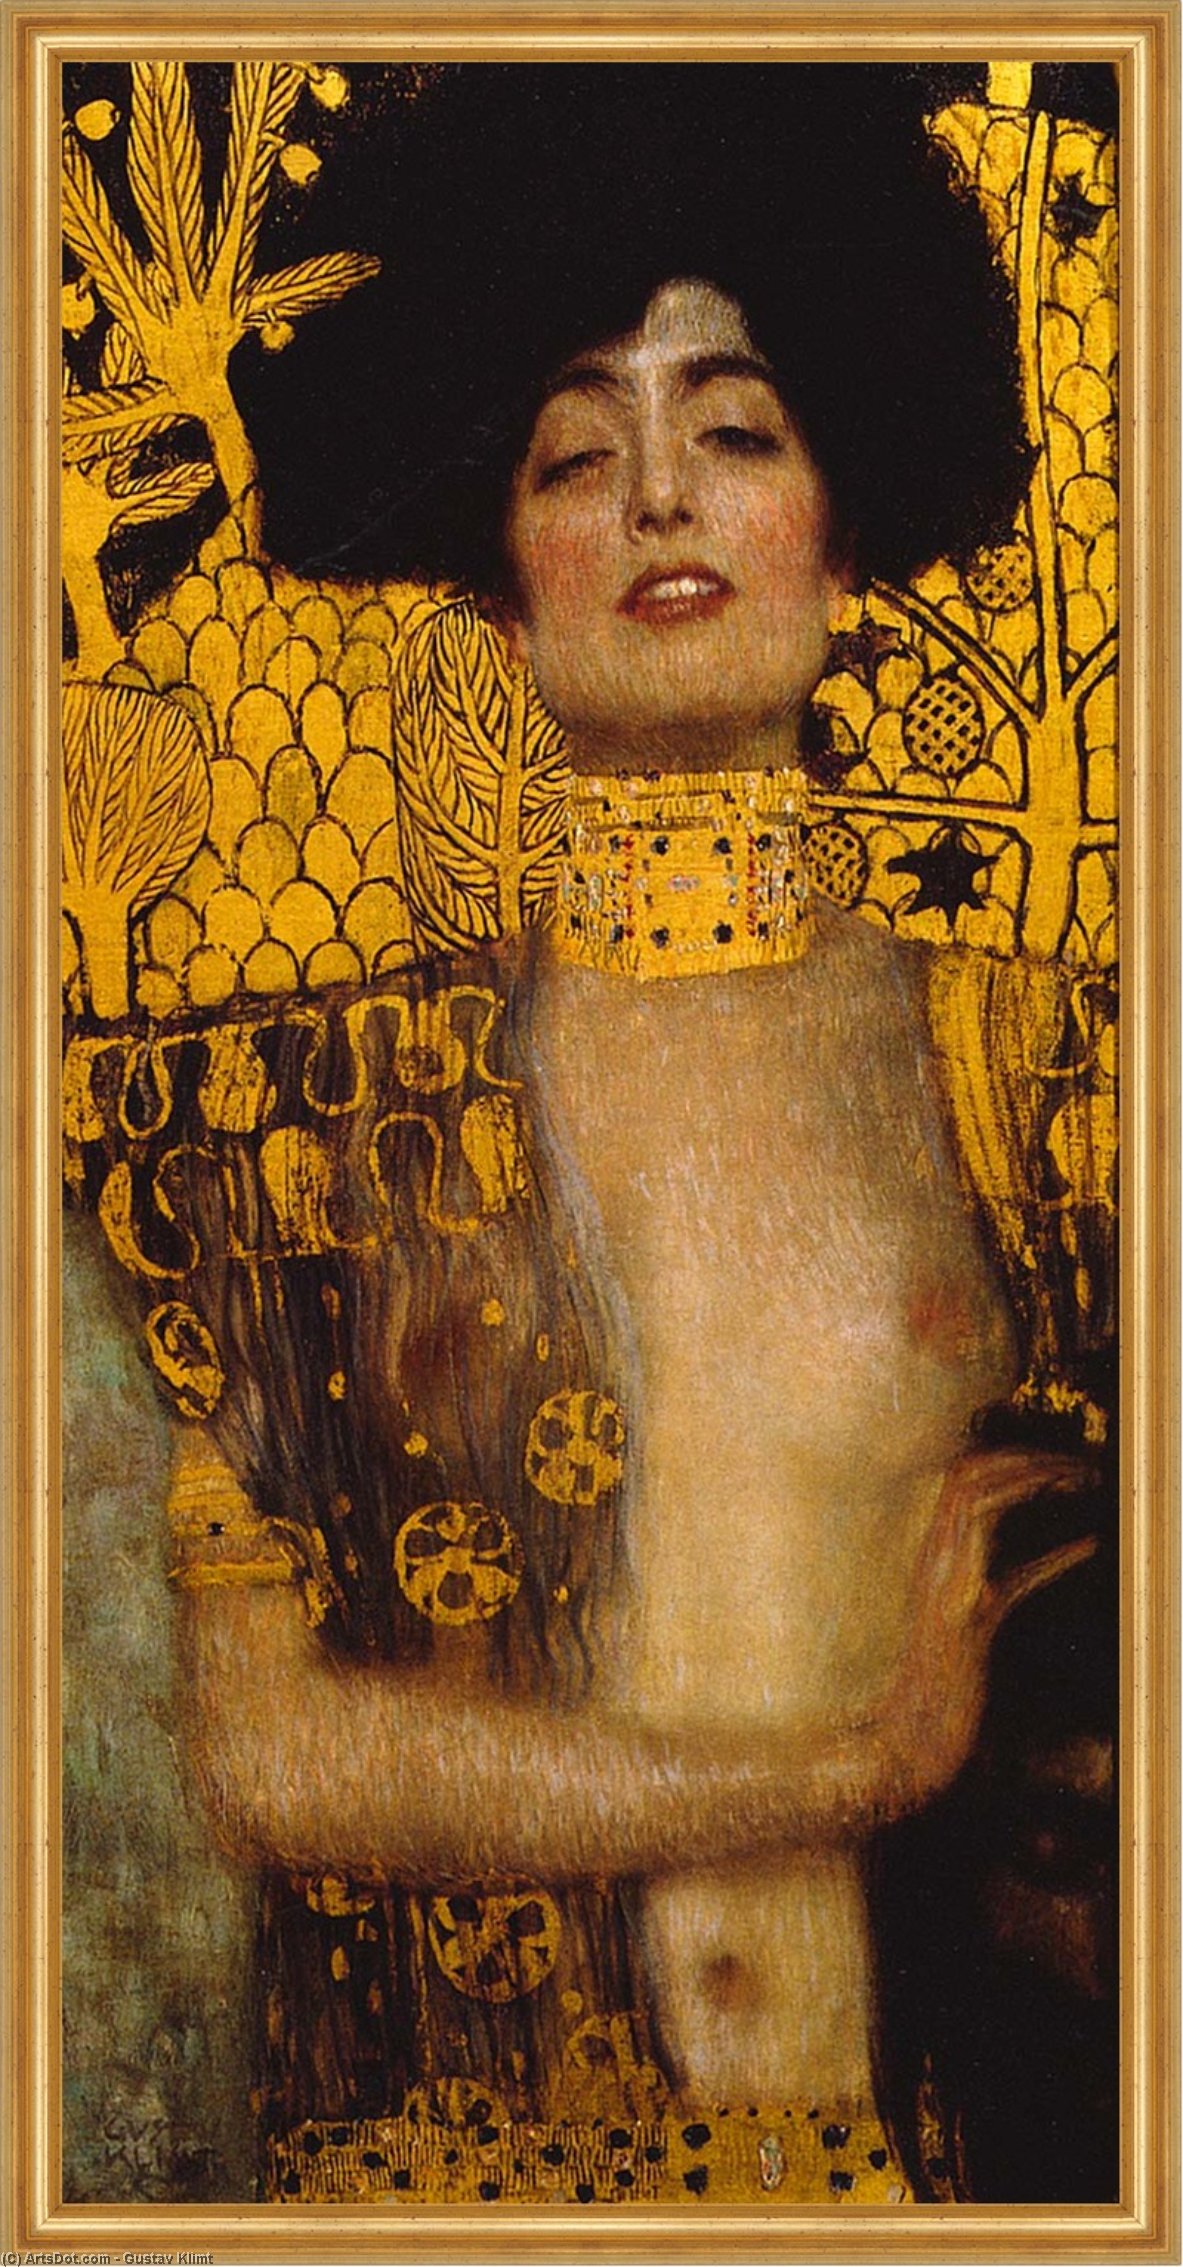  Oil Painting Replica Giuditta i wien by Gustav Klimt | ArtsDot.com